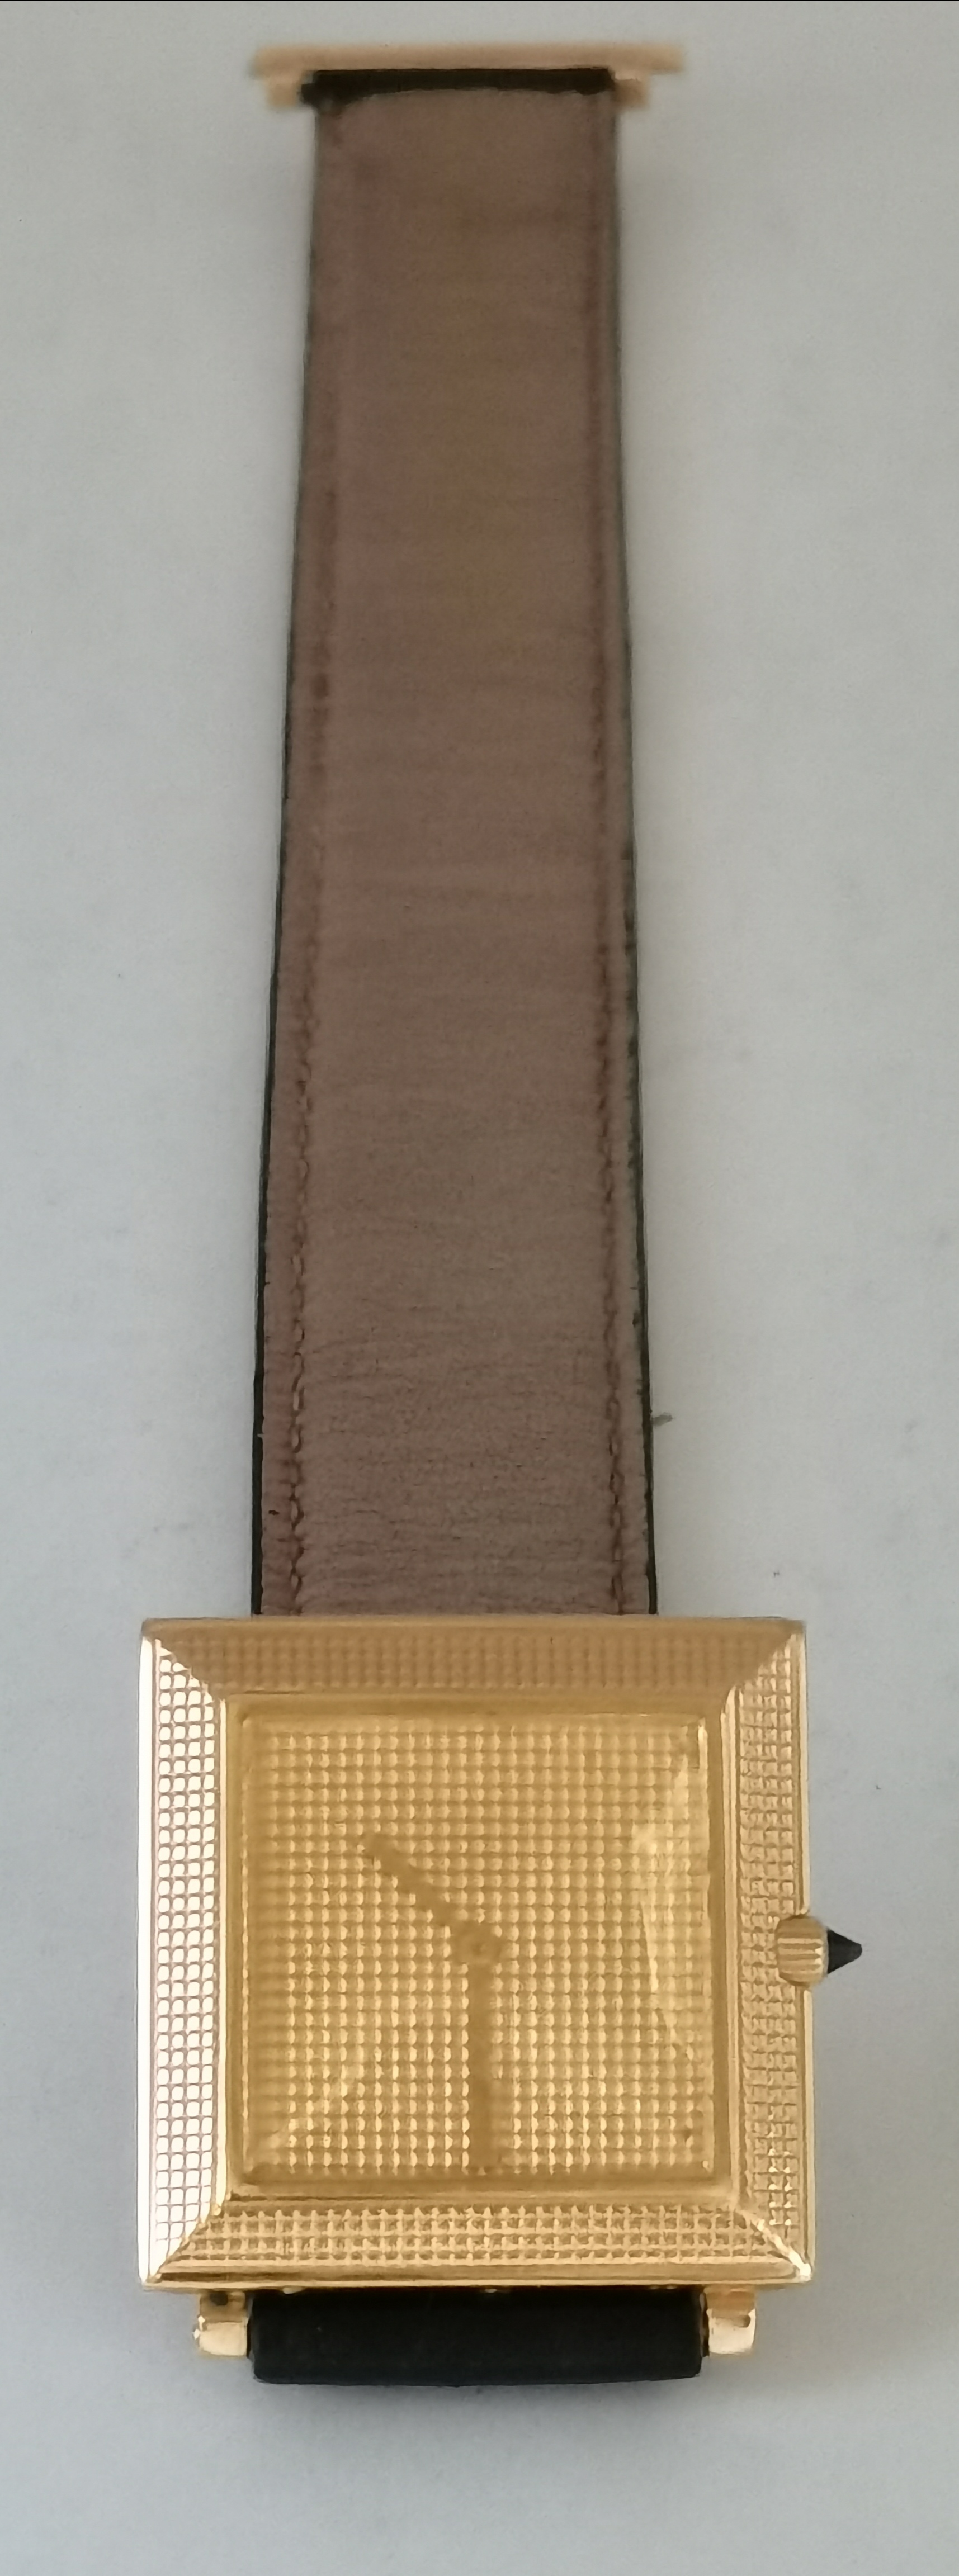 An 18 carat gold Boucheron 'Carrée' wristwatch - Image 2 of 19